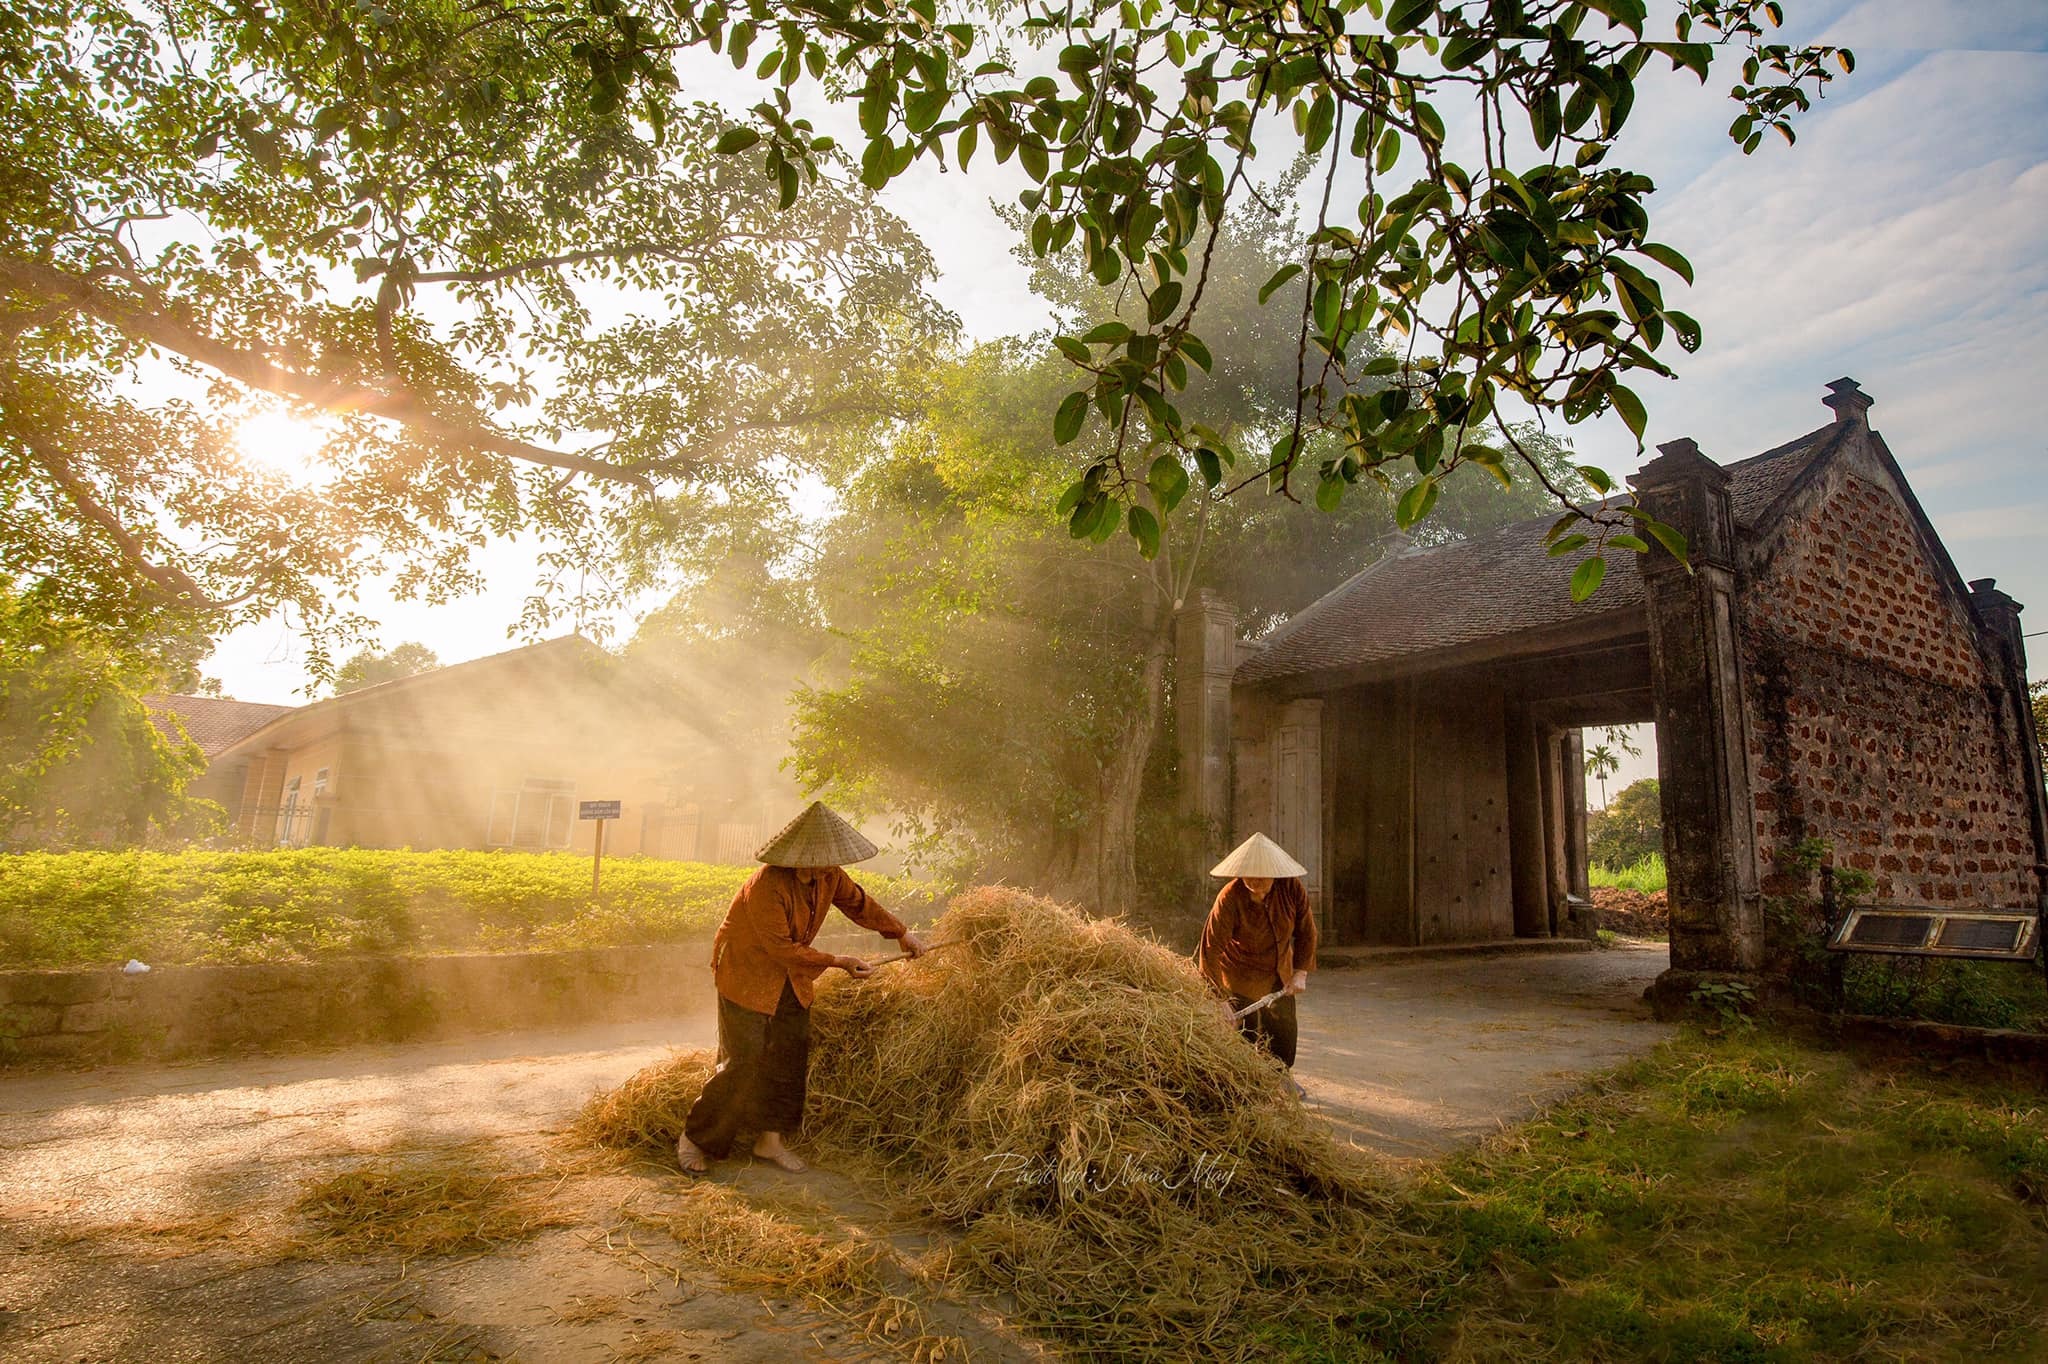 Ảnh làng quê Việt Nam là một điều khó thể bỏ qua đối với những người yêu thiên nhiên và muốn tìm kiếm nét đẹp trong cuộc sống. Bức hình này sẽ đưa bạn lạc vào một thế giới khó quên, nơi ánh nắng chiếu rọi và hình ảnh đẹp ngời.